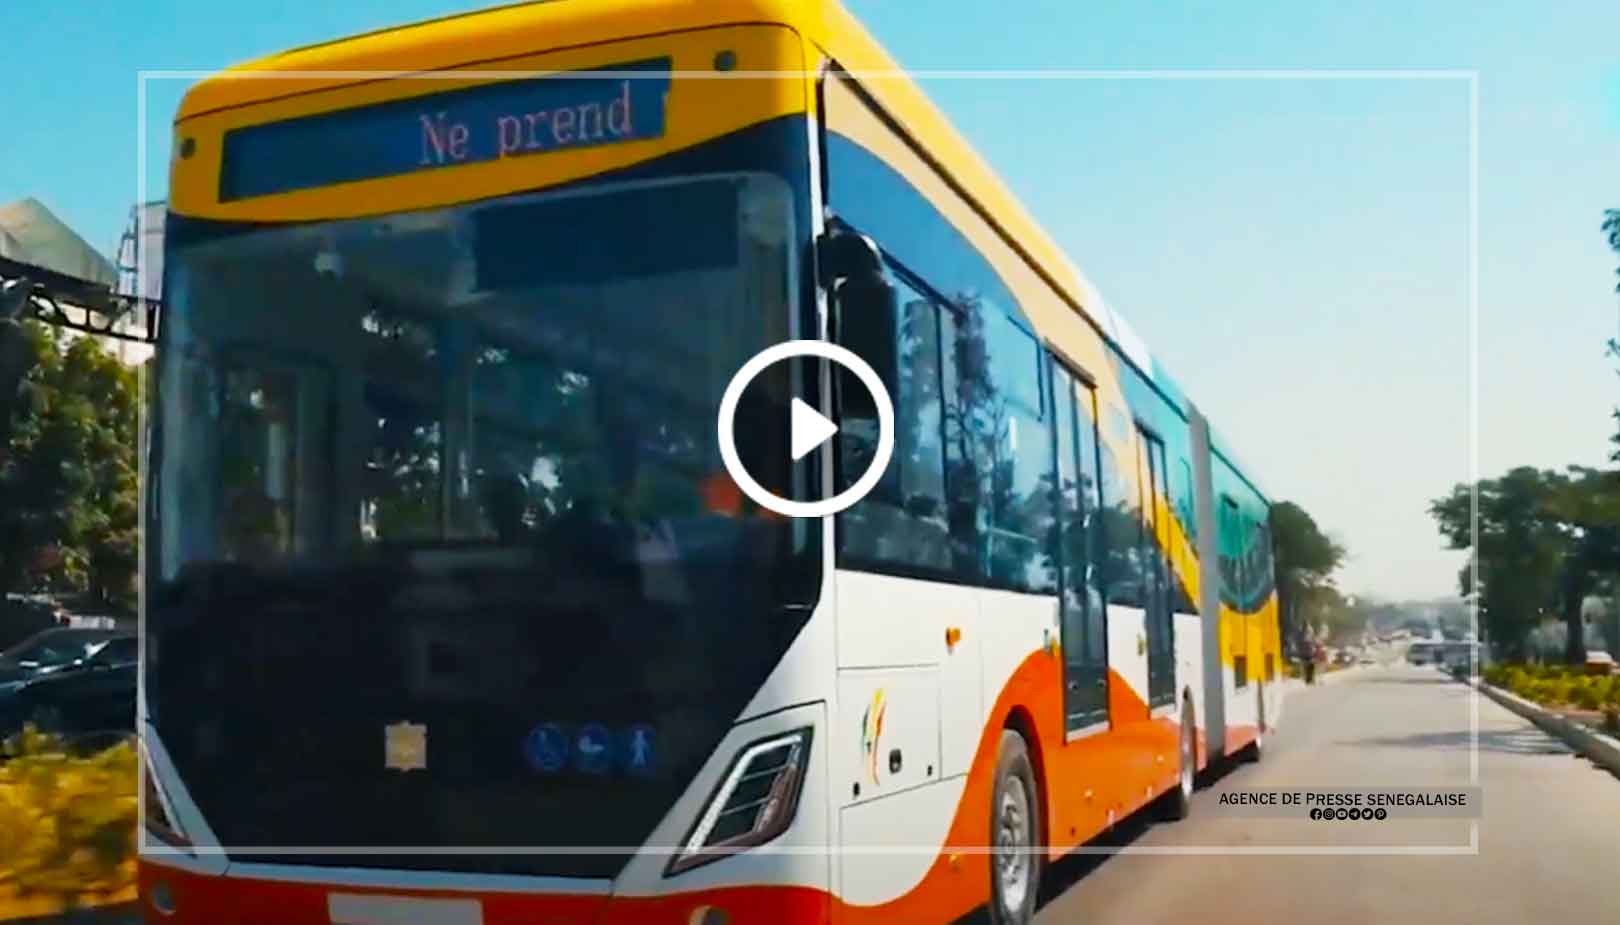 BRT le pari d’une mobilité verte